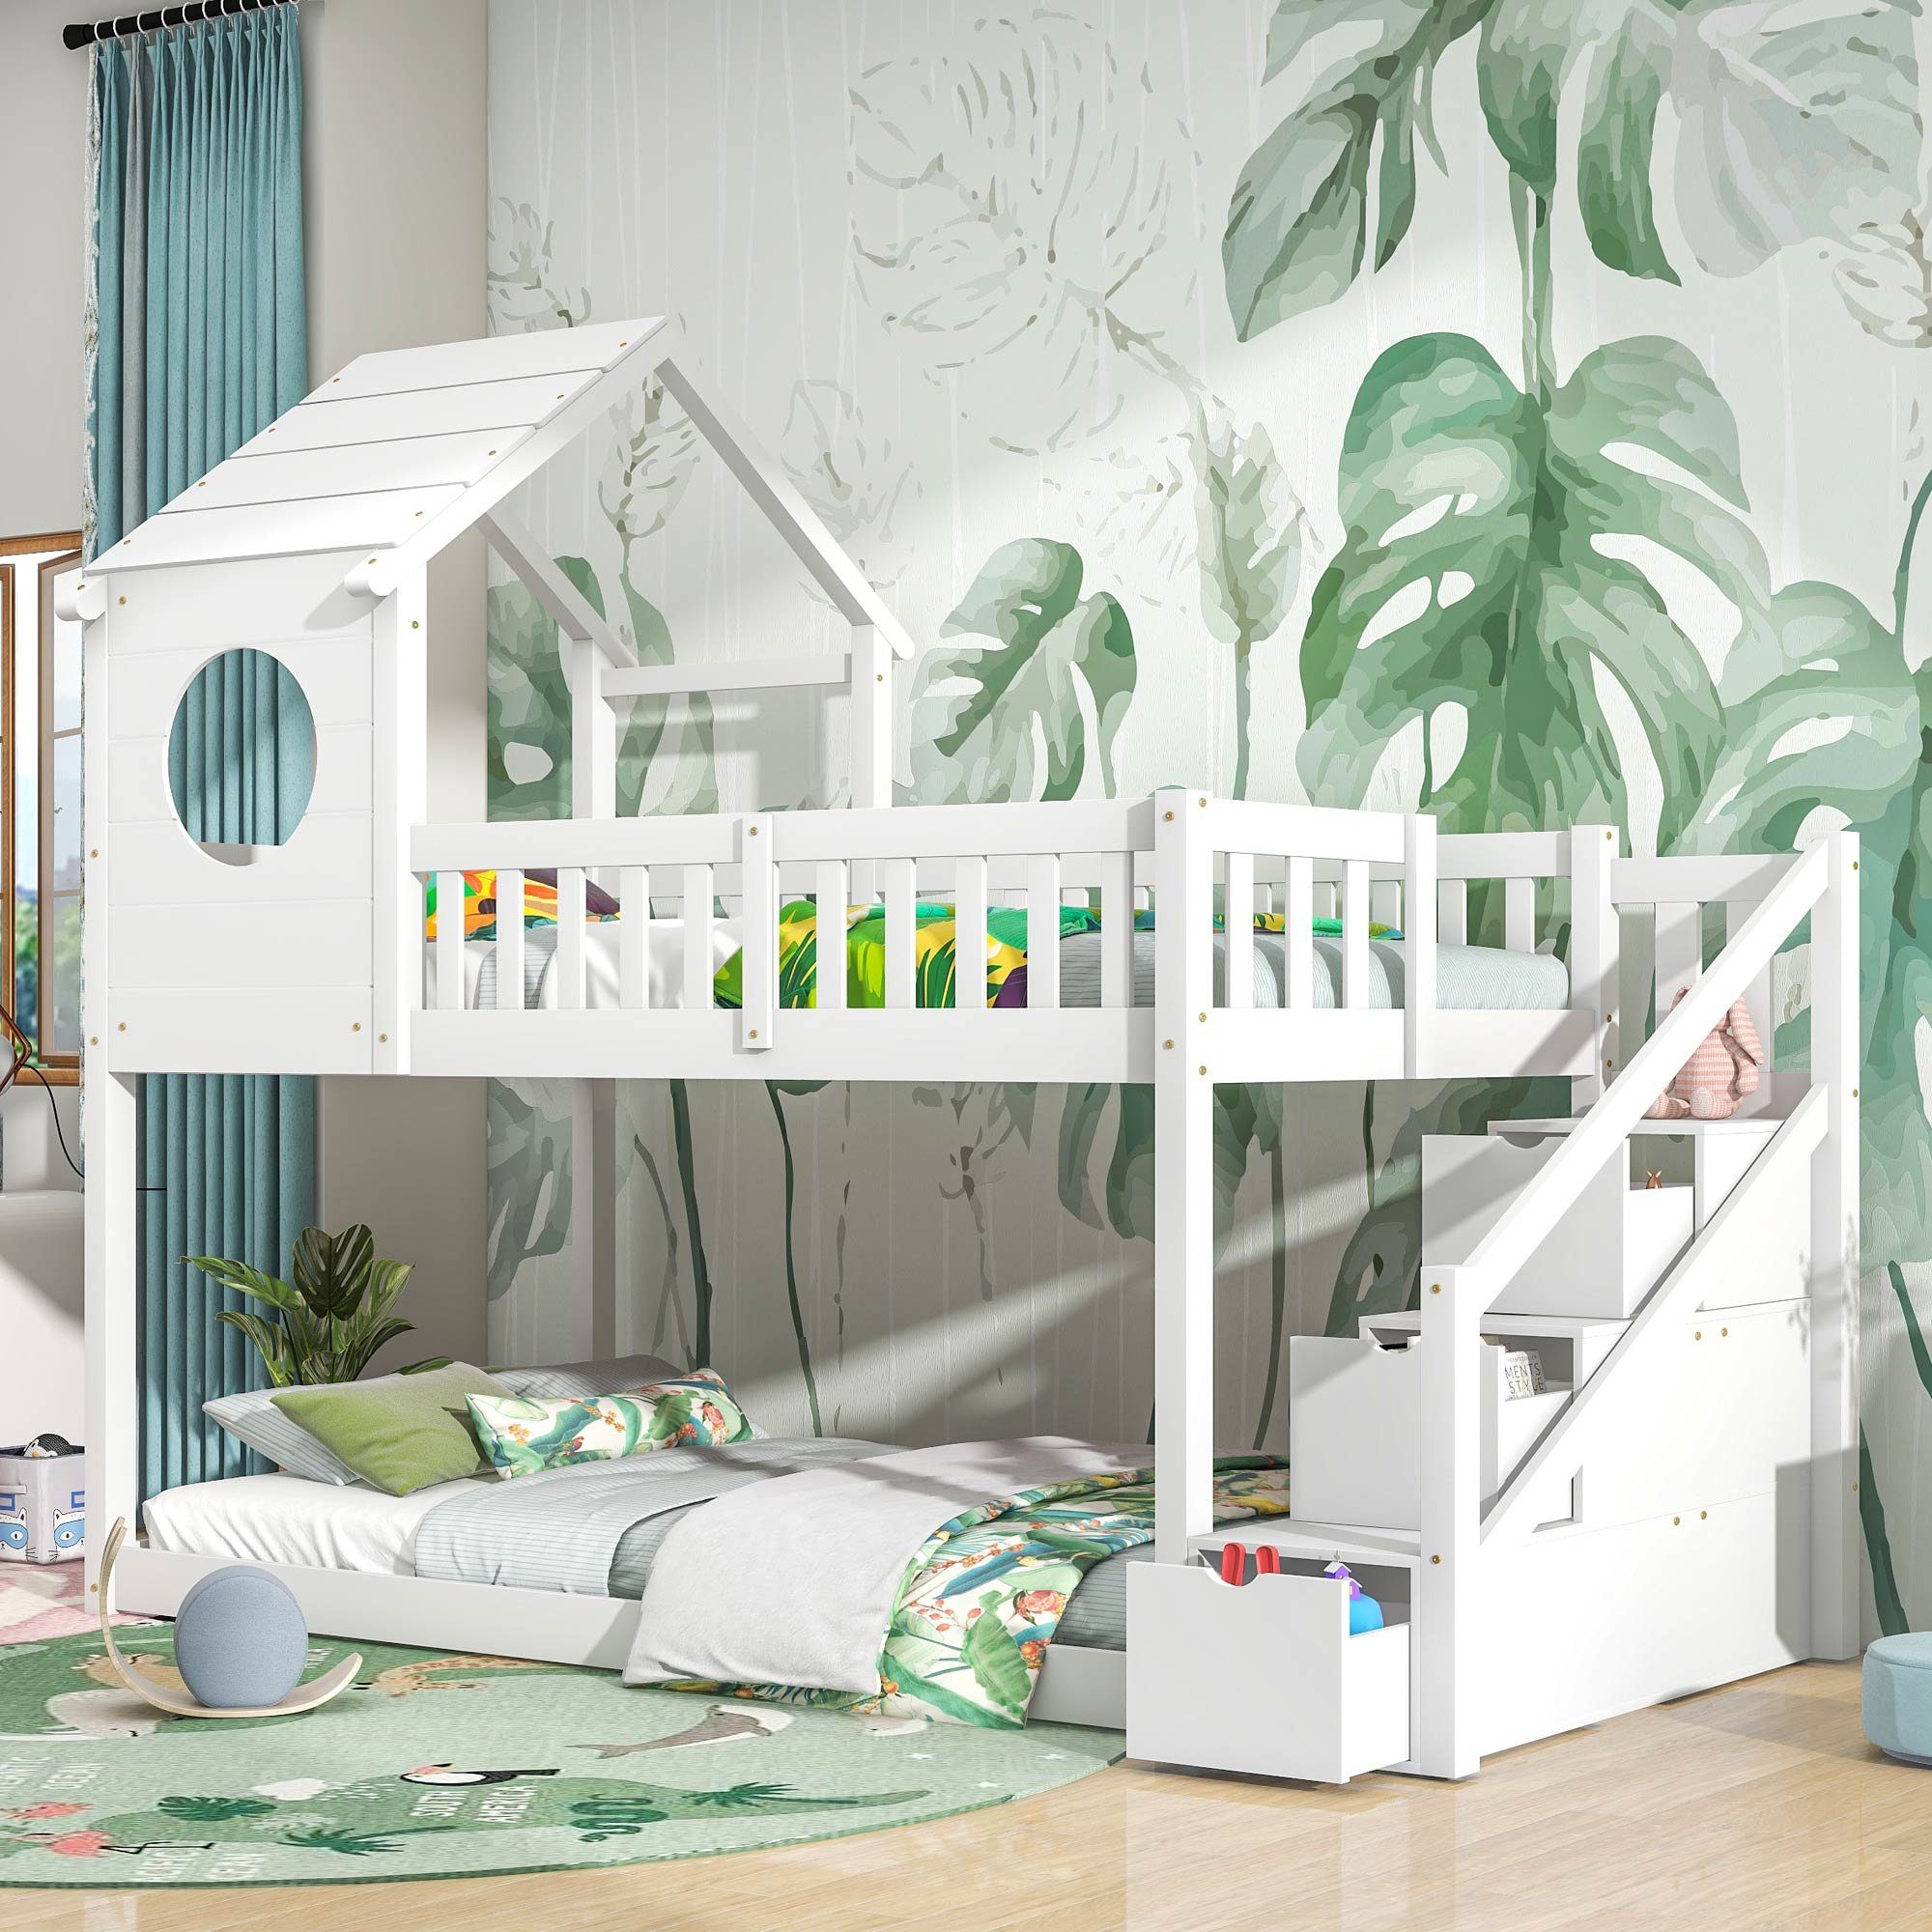 OKWISH Etagenbett Doppelbett, Kinderbett in Hausform (90 x 200 cm, ohne Matratze, weiß), Leiterschrank, Kiefernholz Haus Bett for Kids